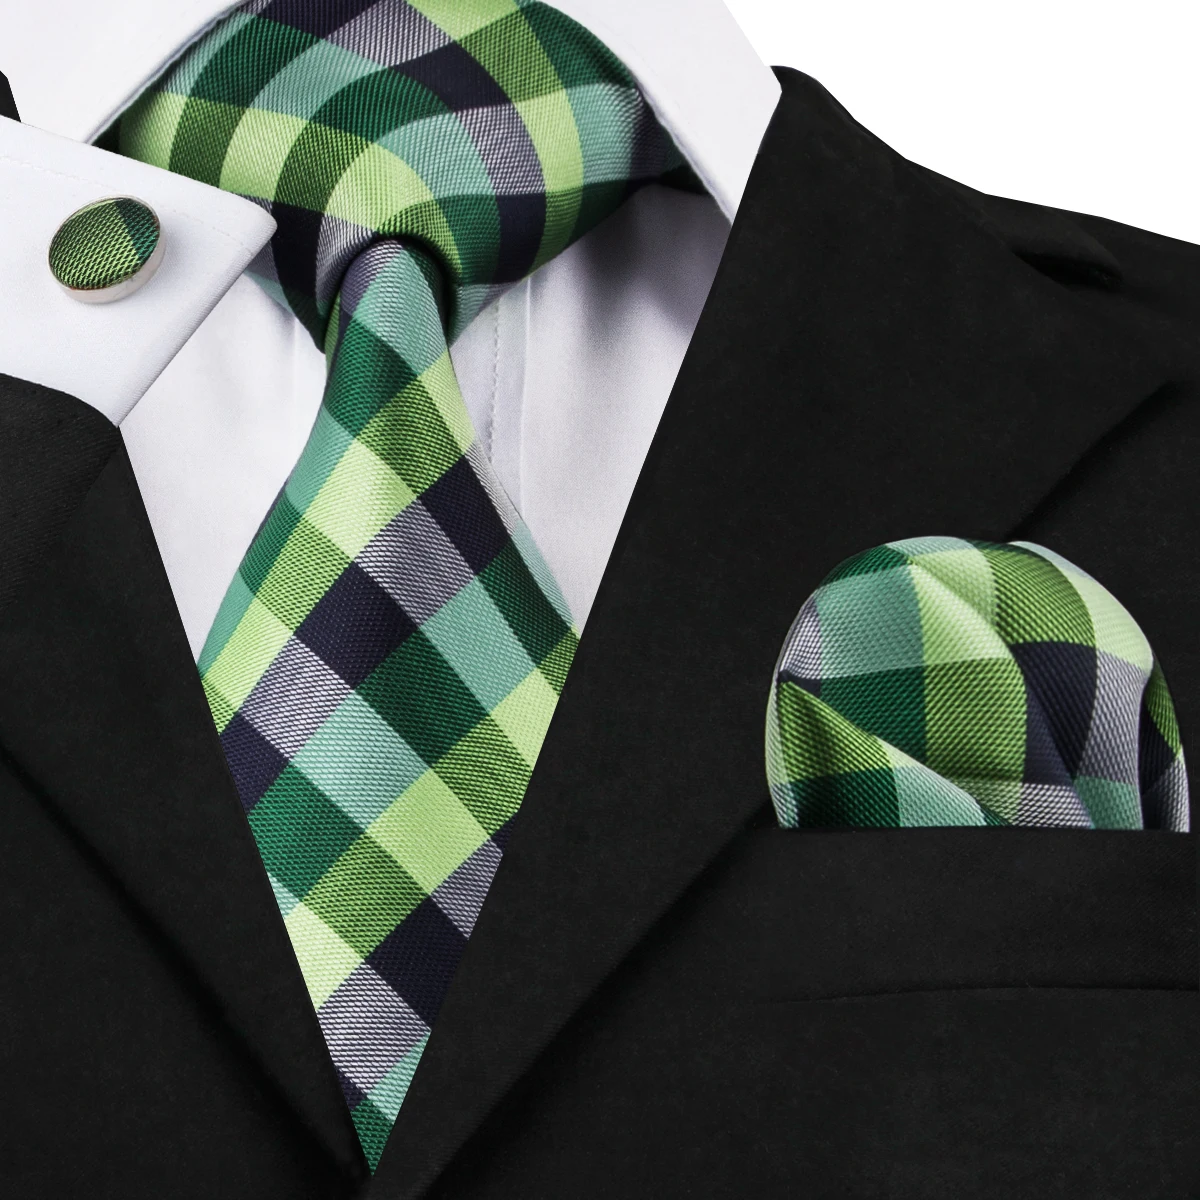 Мужские галстуки 2019 новые мужские модные аксессуары зеленый желтый черный белый клетчатый классический галстук из 100% шелка